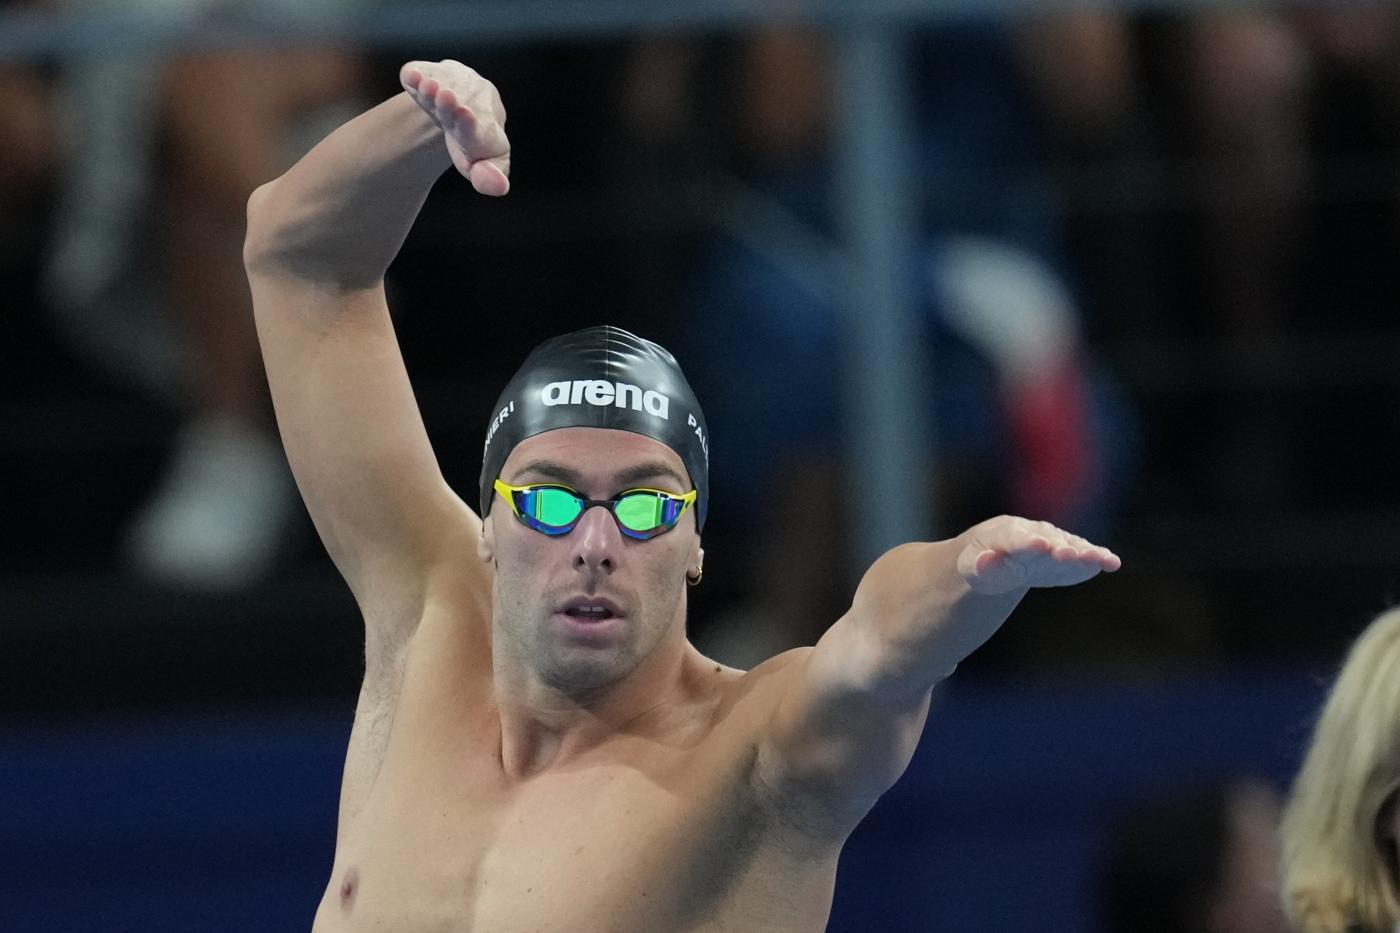 Nuoto, Gregorio Paltrinieri: “Non avrei scommesso sul mio argento, ho febbre da stress da tre giorni”